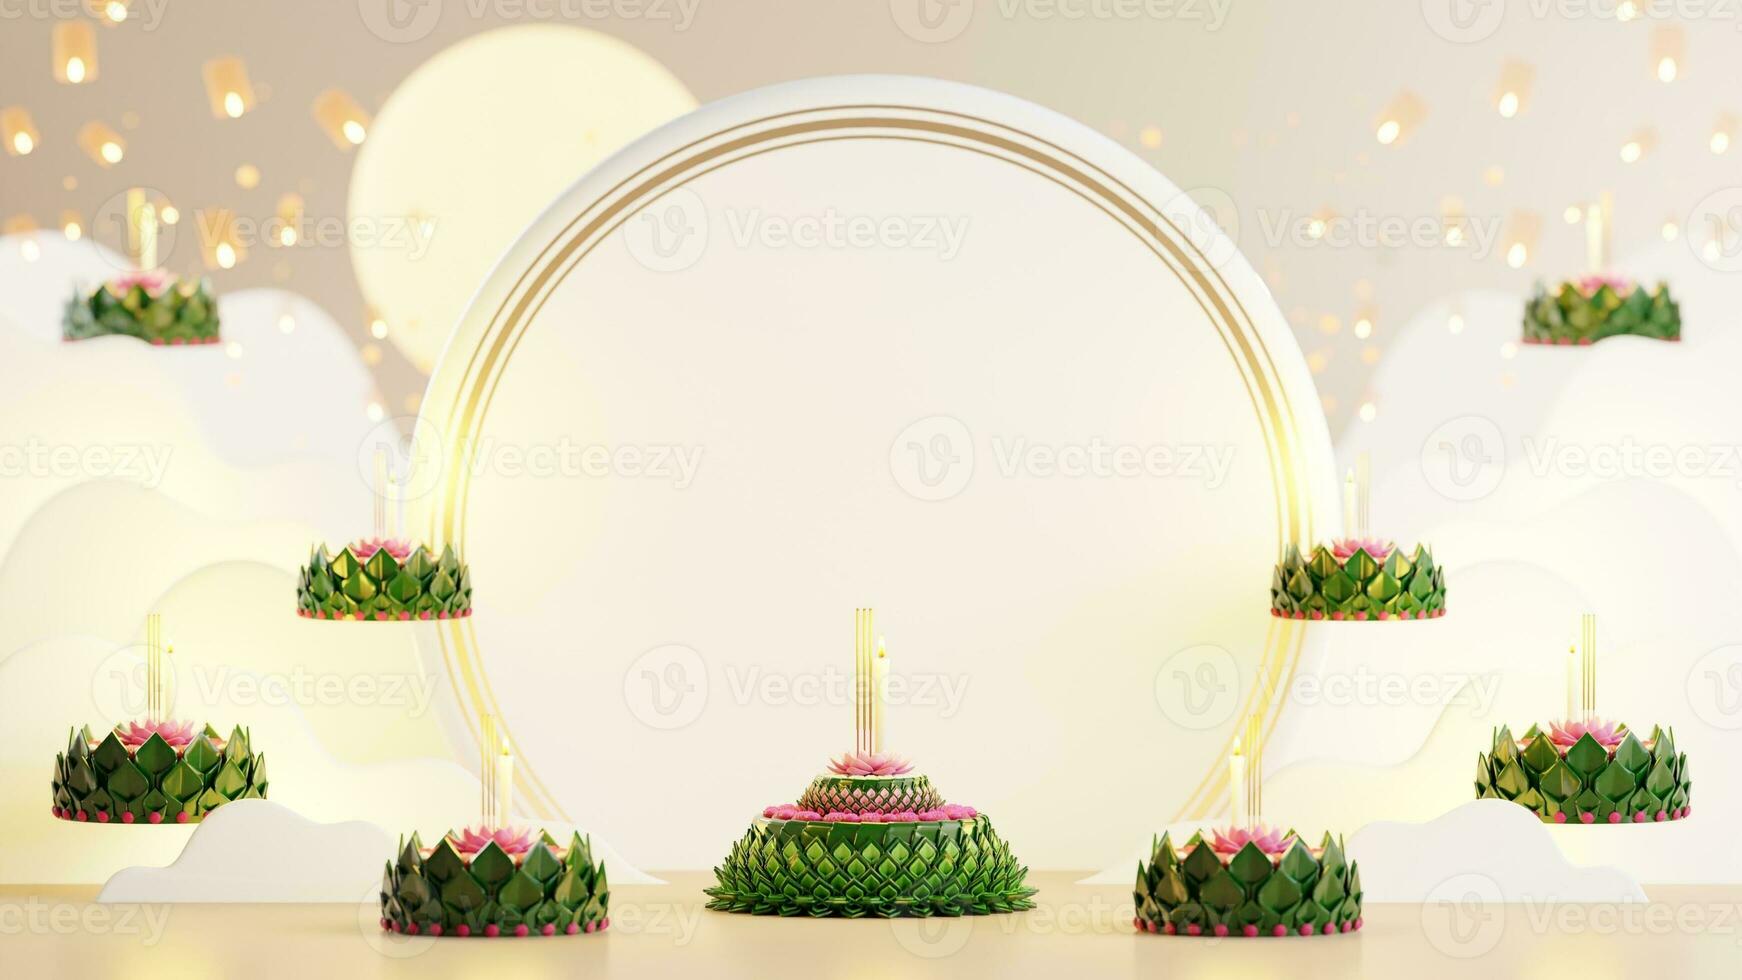 3d interpretazione illustrazione loy Krathong Festival e yi peng Festival nel Tailandia Krathong a partire dal Banana foglie, fiori, candele e incenso bastoni, Luna piena, fiume, e notte sfondo colore. foto